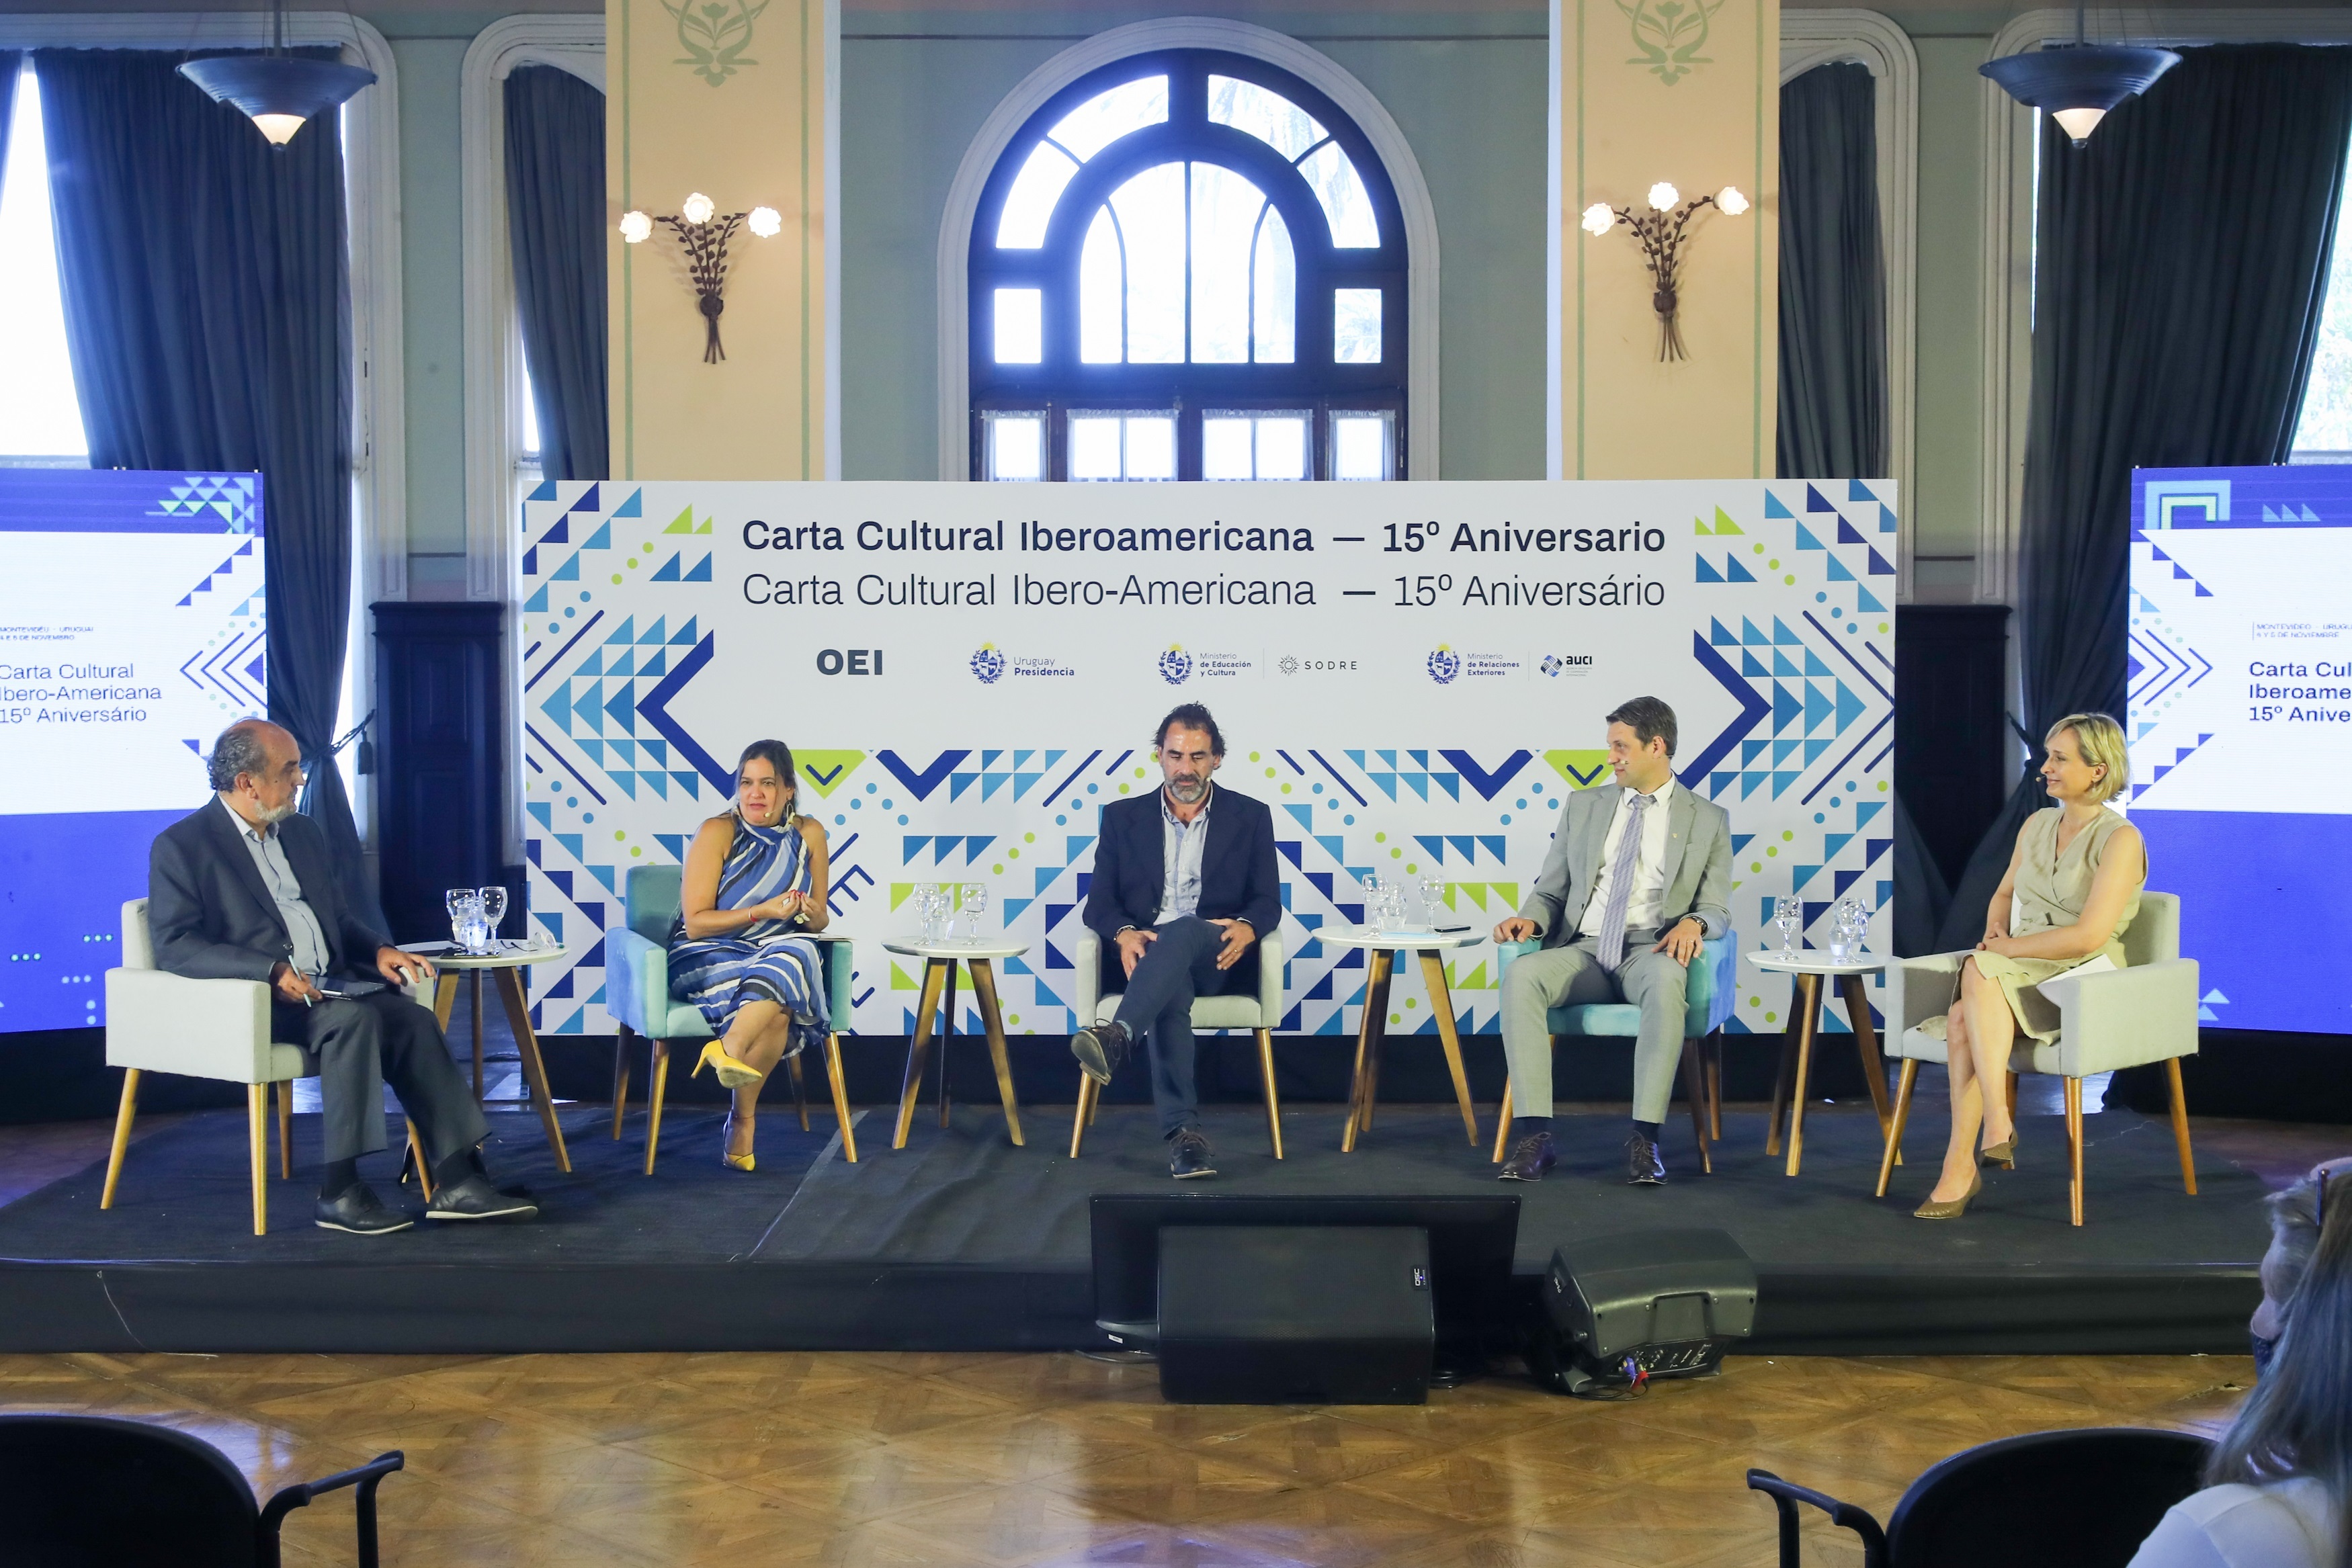 La Colaboración Público Privada En La Cultura A Debate En Uruguay Infobae 